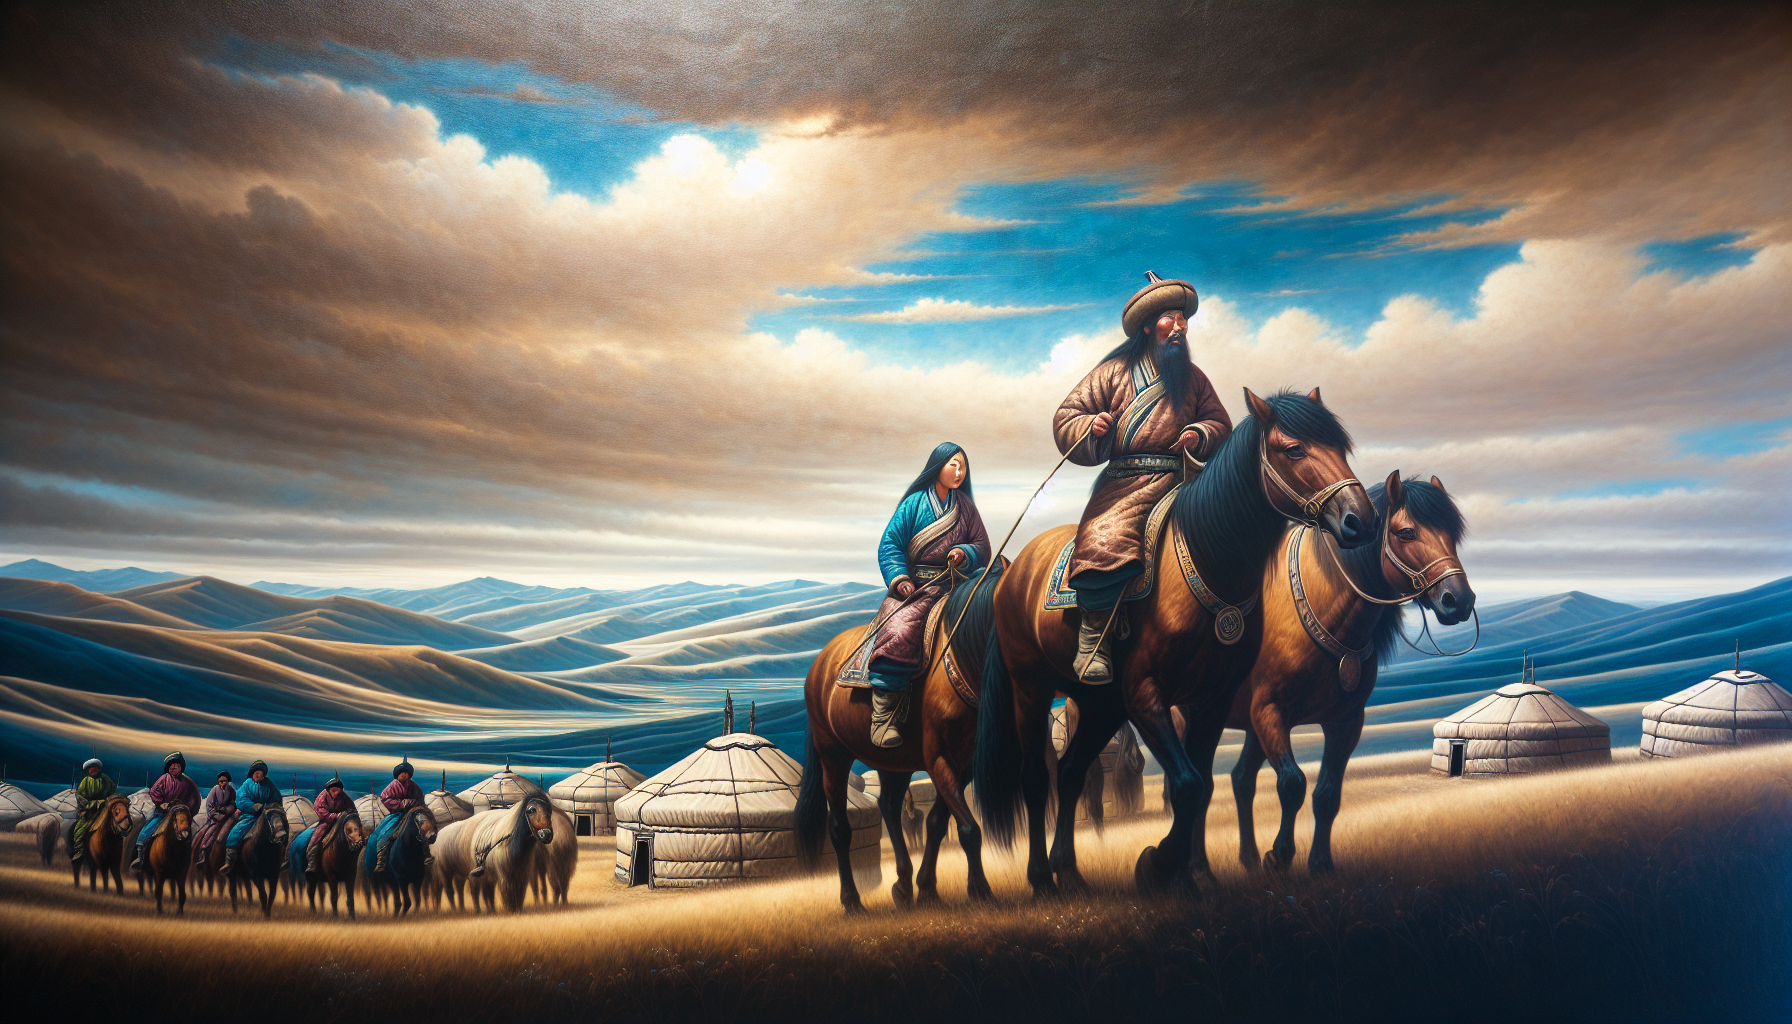 Malerei von mongolischen Nomaden in der Steppe